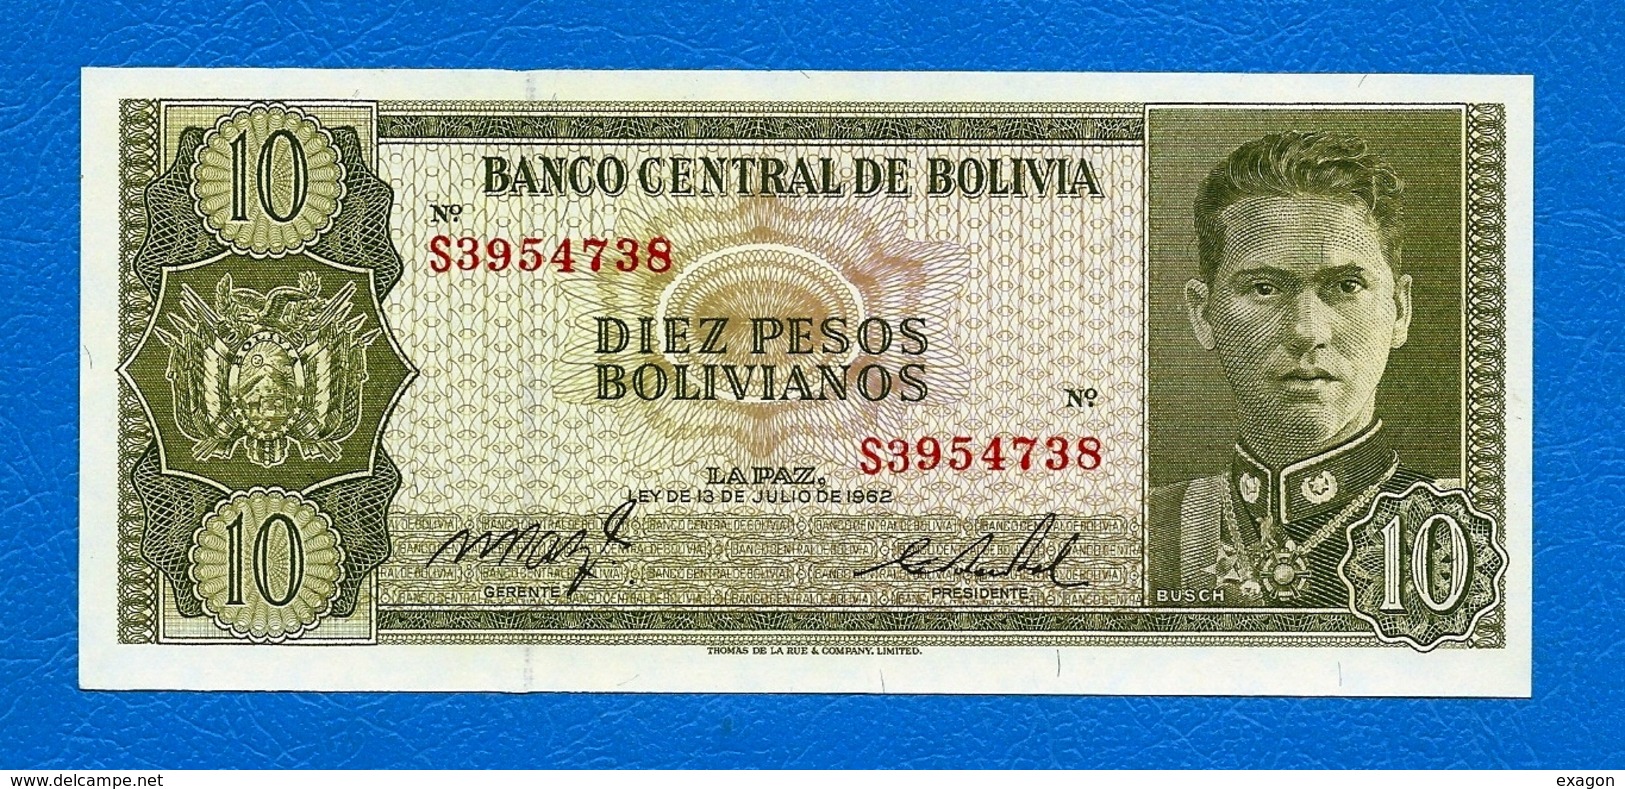 N. 1 Banconota Da 10   PESOS  BOLIVIANOS  -  BANCO  CENTRAL DE   BOLIVIA  -  Anno 1962. - Bolivia